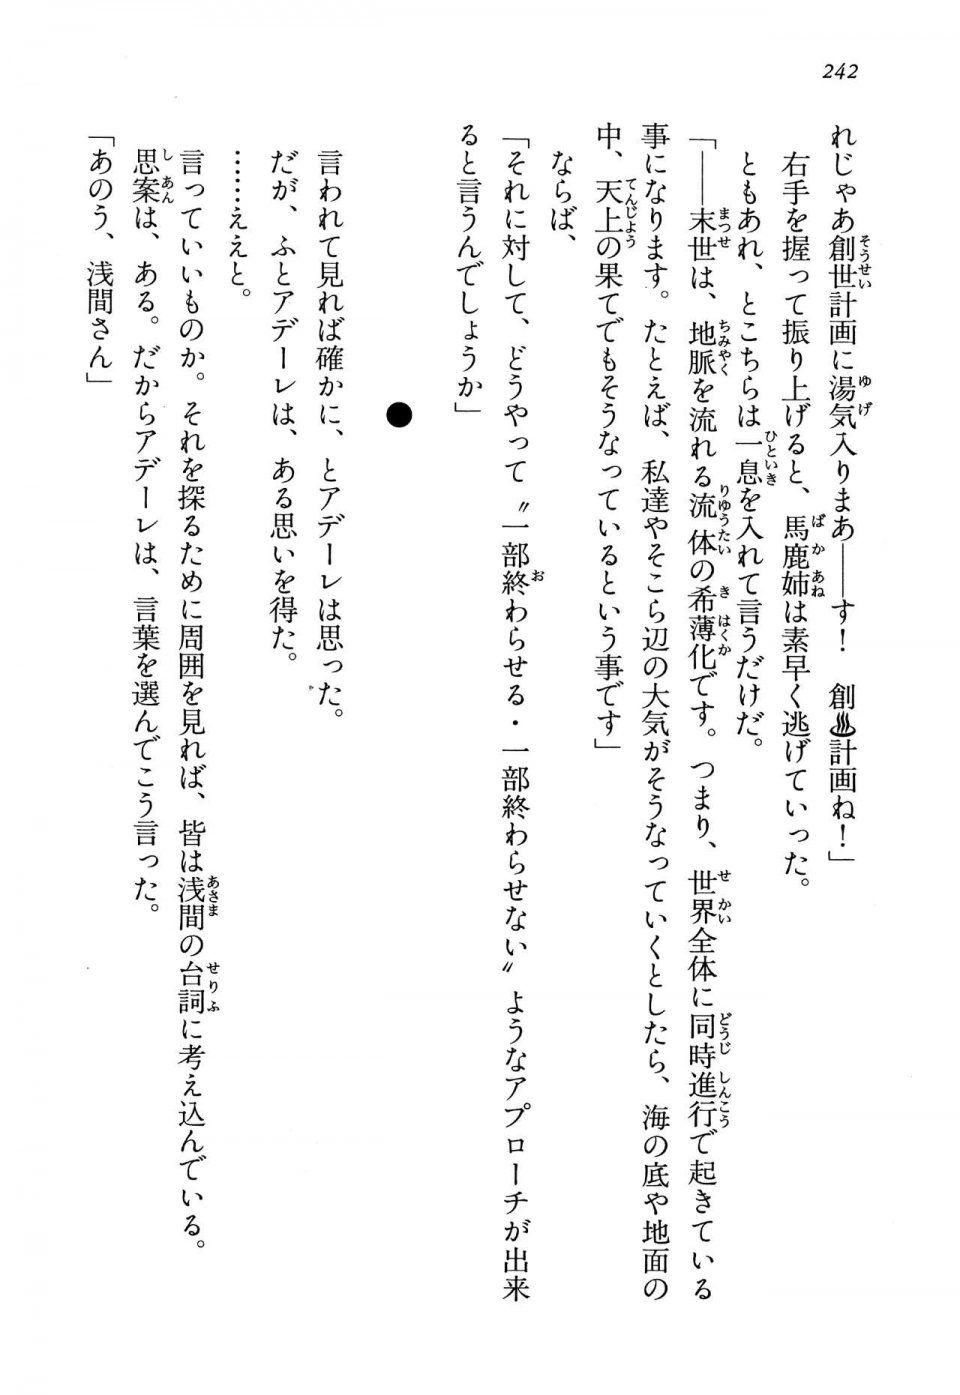 Kyoukai Senjou no Horizon LN Vol 13(6A) - Photo #242